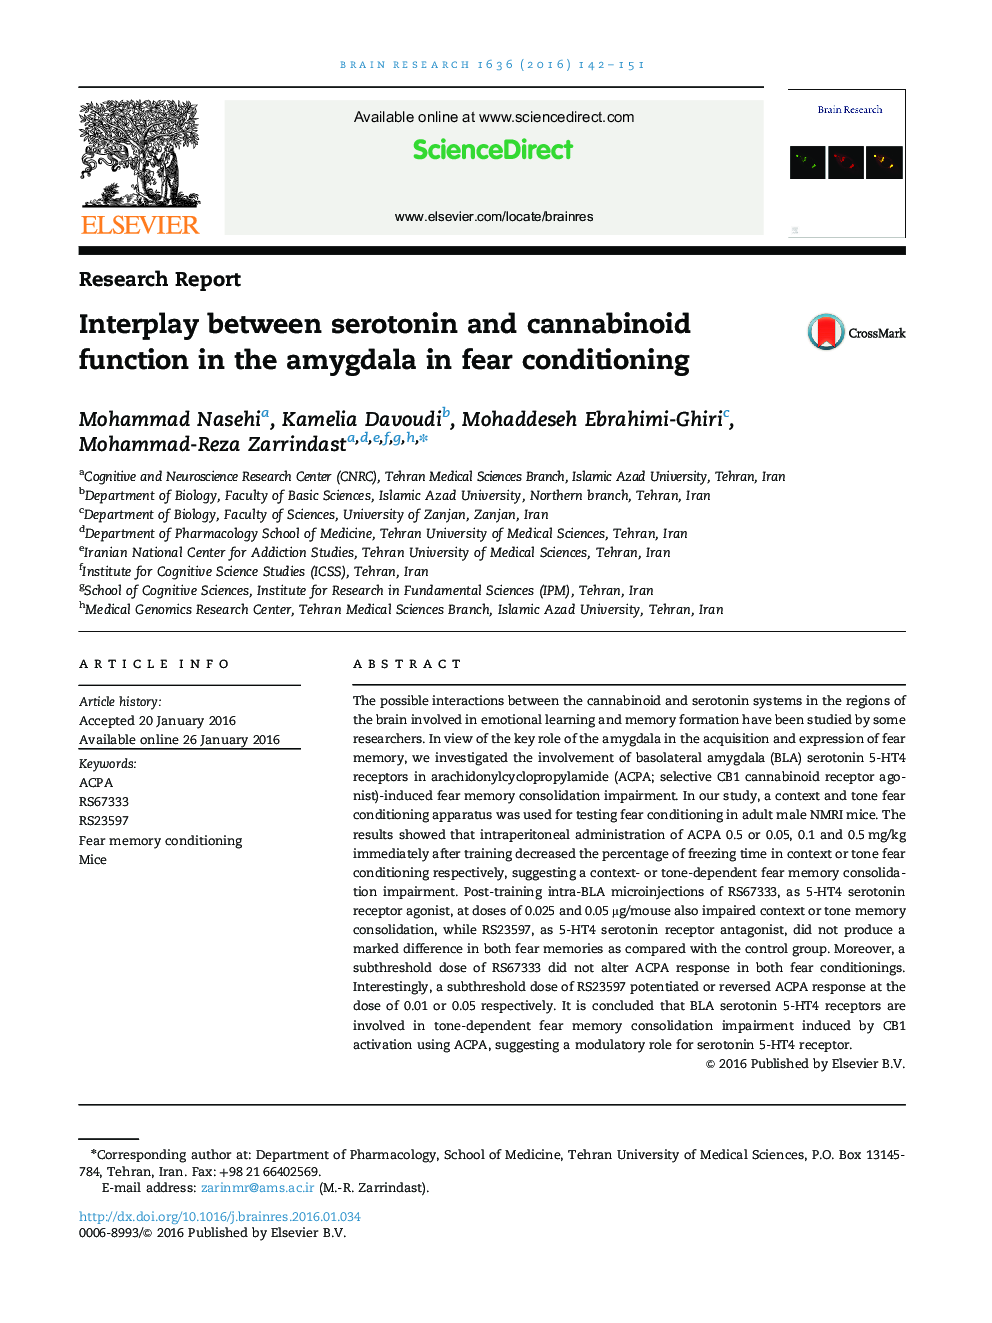 تعامل بین سروتونین و عملکرد کانابینوئید در آمیگدال در تهدید ترس 